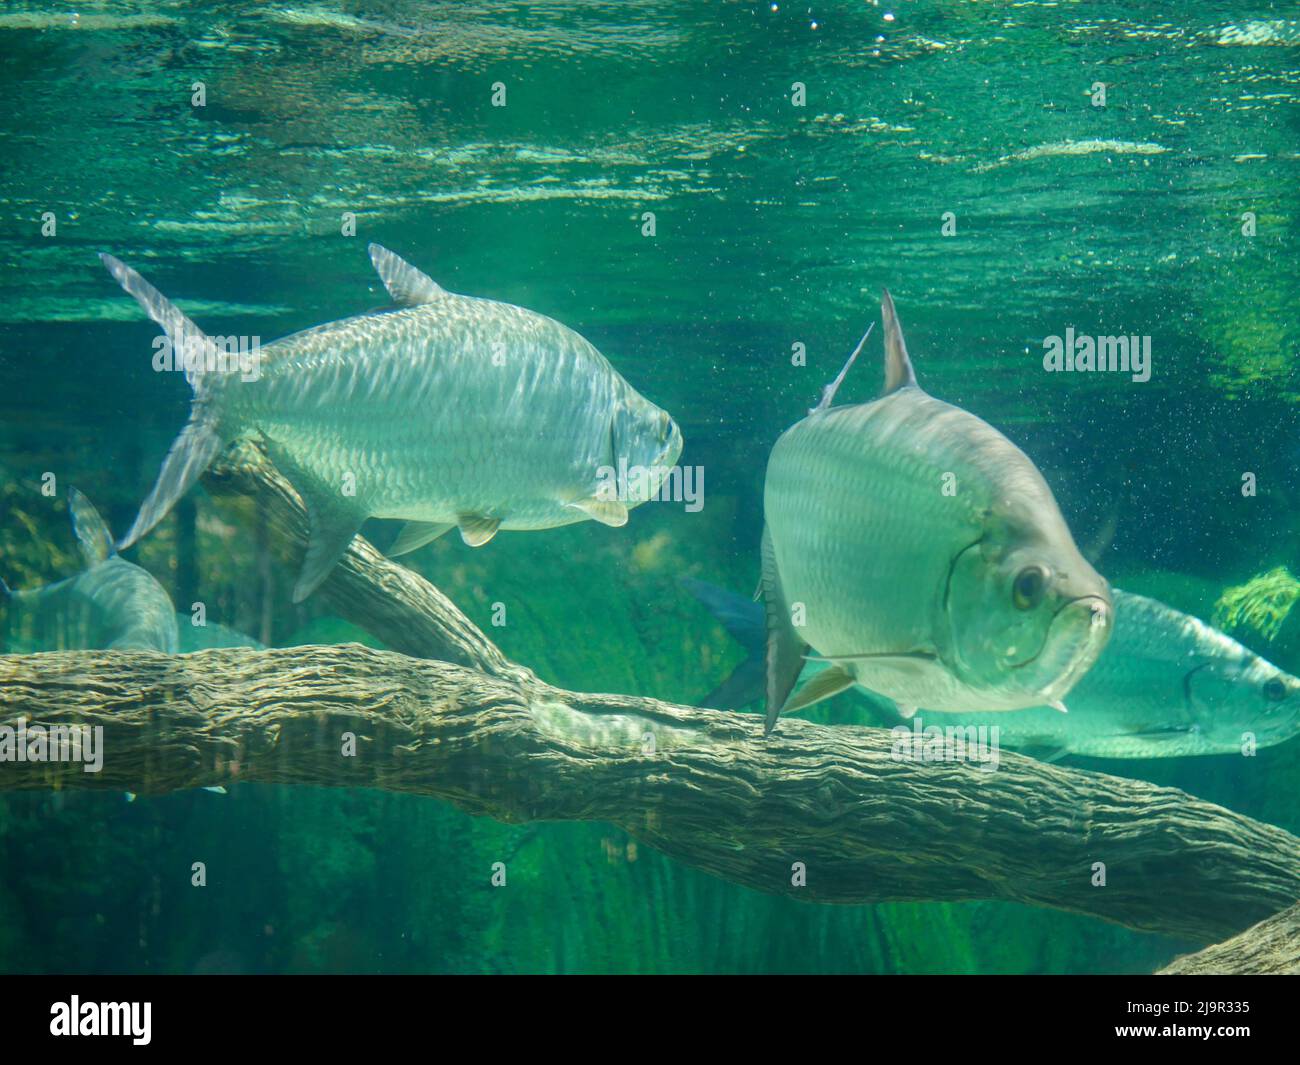 Pez de tarpon atlántico también conocido como el rey de plata, nadando en el acuario del tanque del pez. Es un pez con aletas de rayos que habita aguas costeras, estuarios, l Foto de stock